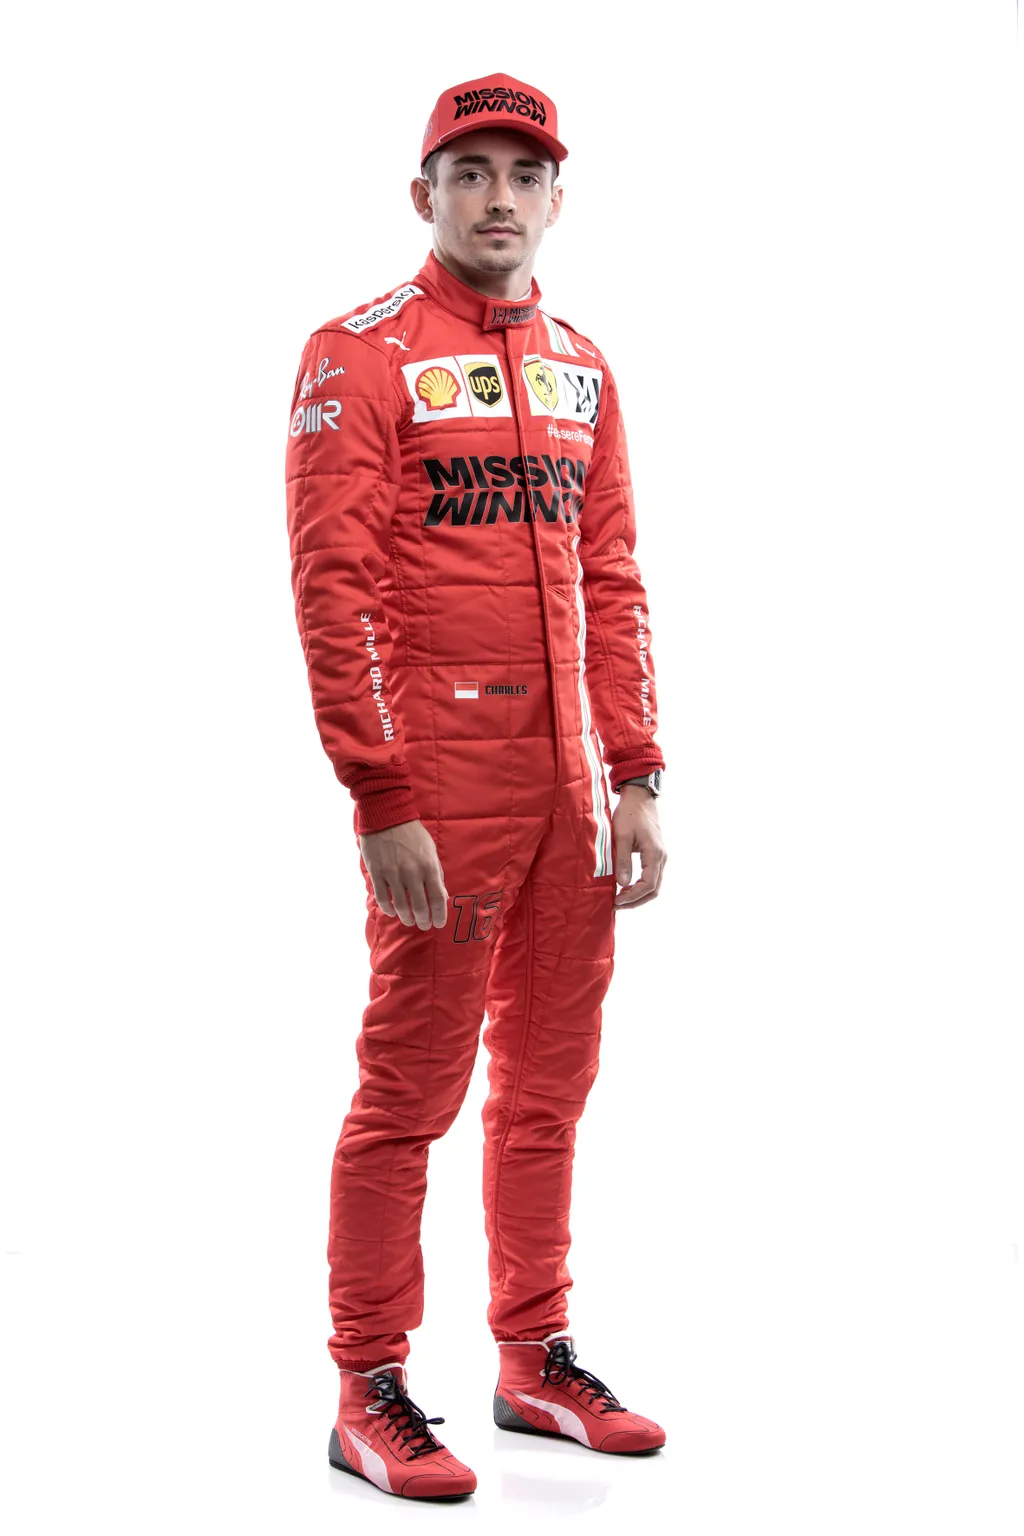 Forma-1, Scuderia Ferrari, stúdiófotó, Charles Leclerc 